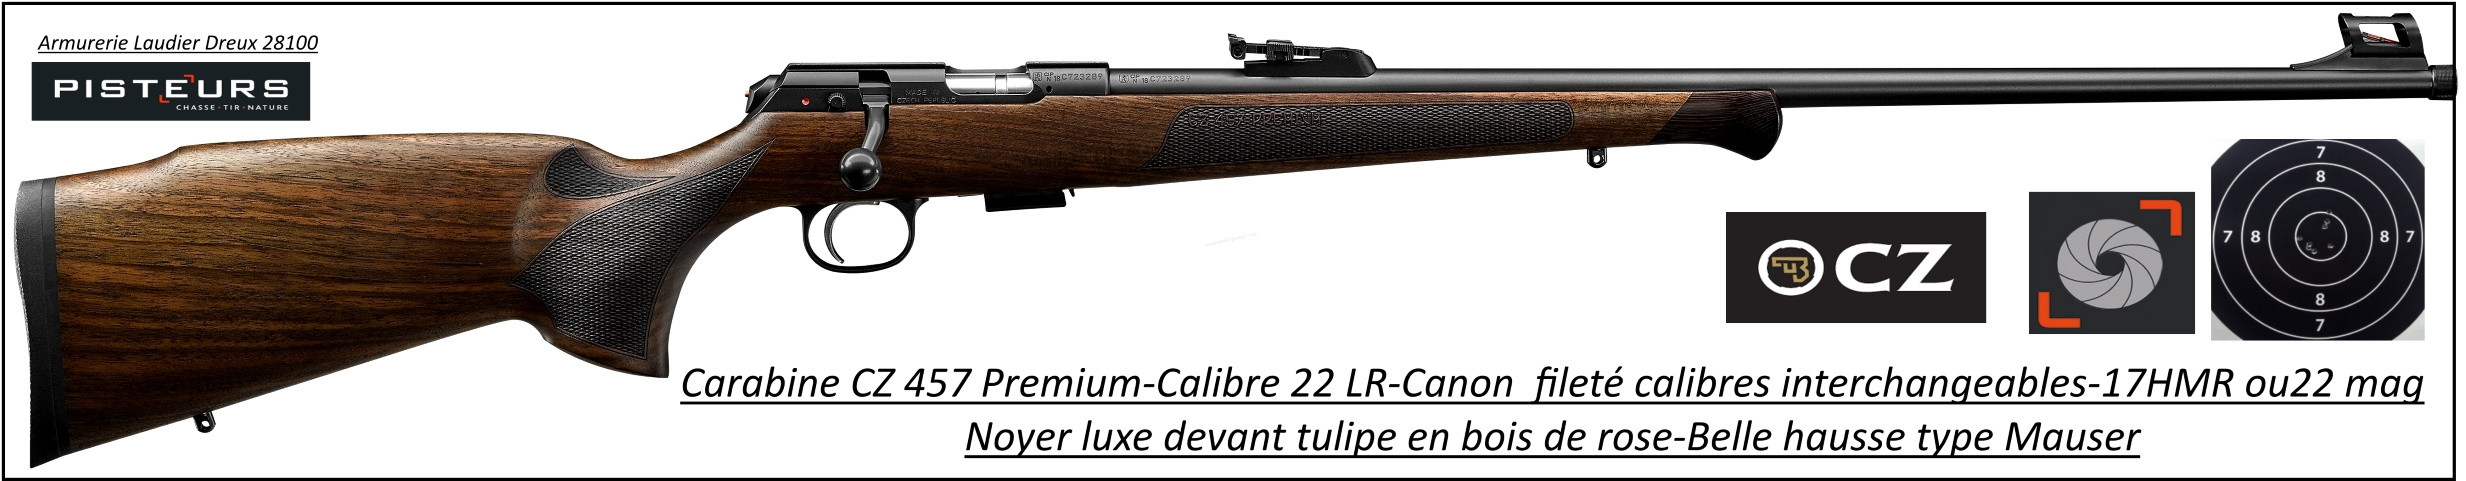 Carabine CZ Mod 457 premium Calibre 22 LR Répétition -Promotion-Ref CZ 457 premium-781393